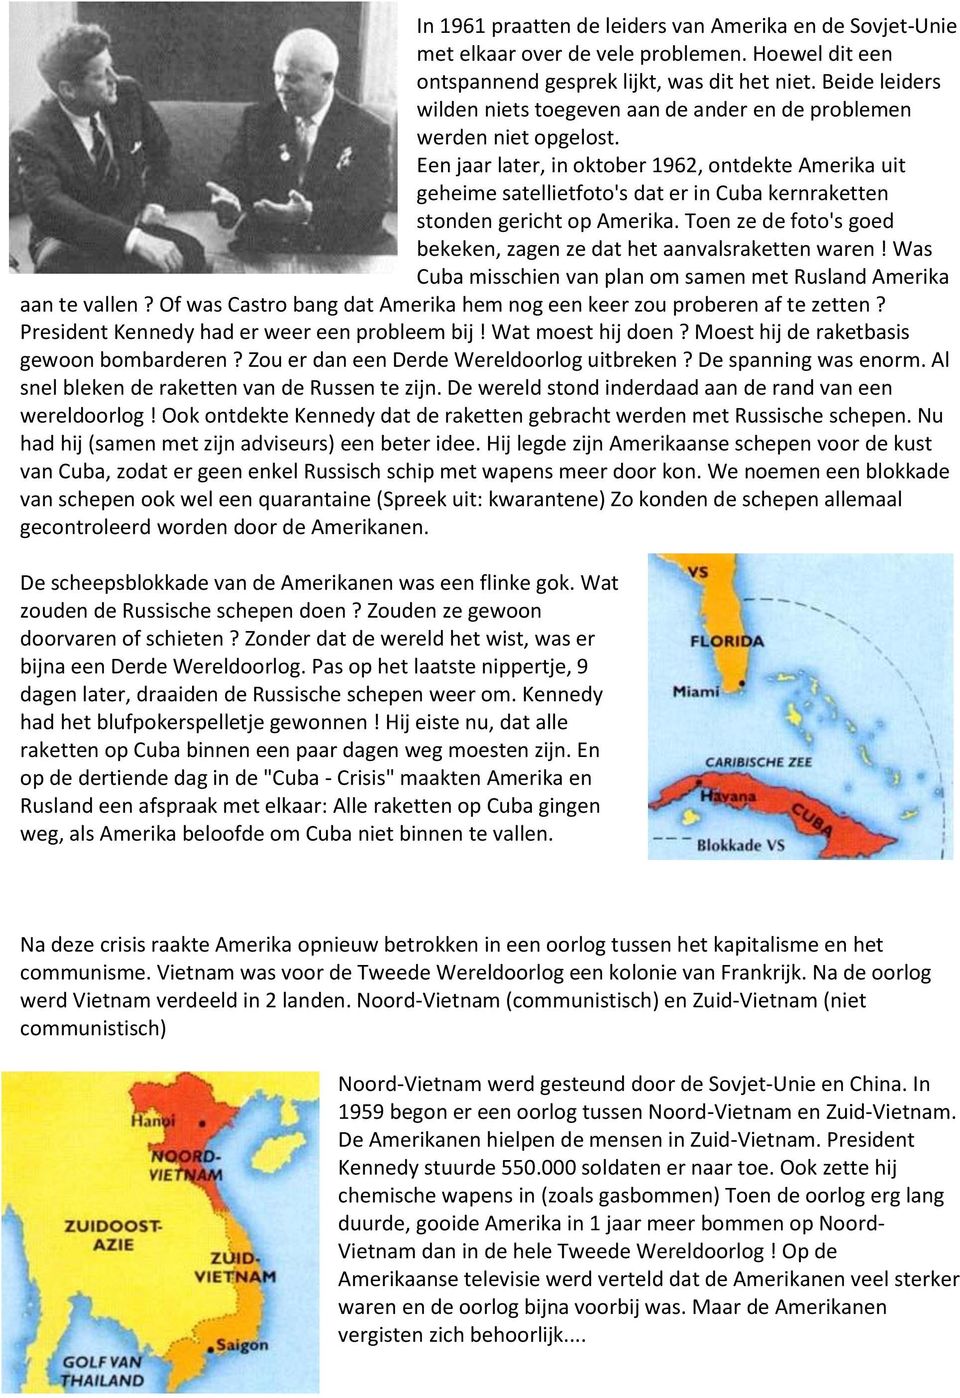 Een jaar later, in oktober 1962, ontdekte Amerika uit geheime satellietfoto's dat er in Cuba kernraketten stonden gericht op Amerika.